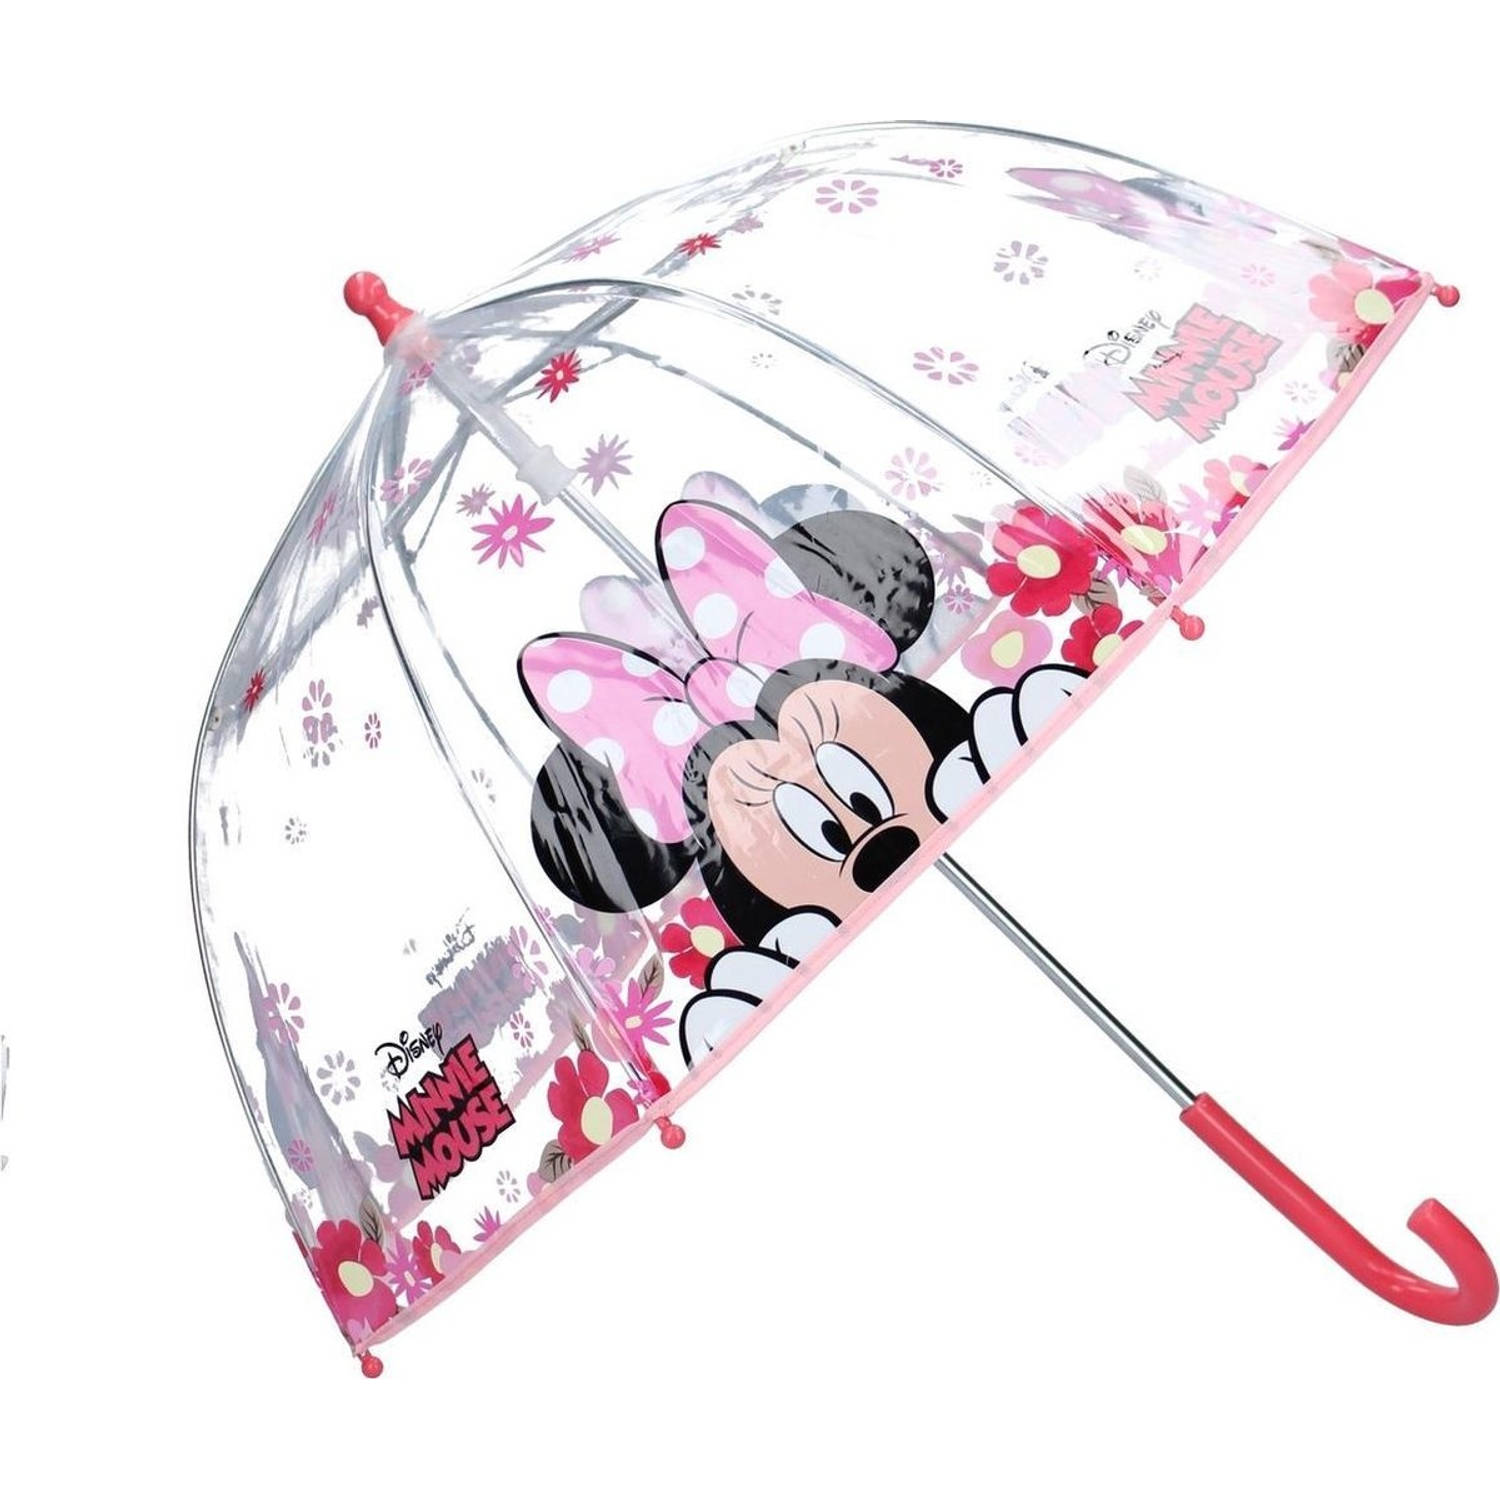 Kinderparaplu - Minnie mouse Kinderparaplu - Disney Minnie mouse Kinderparaplu - Paraplu - Paraplu kopen - Paraplu kind